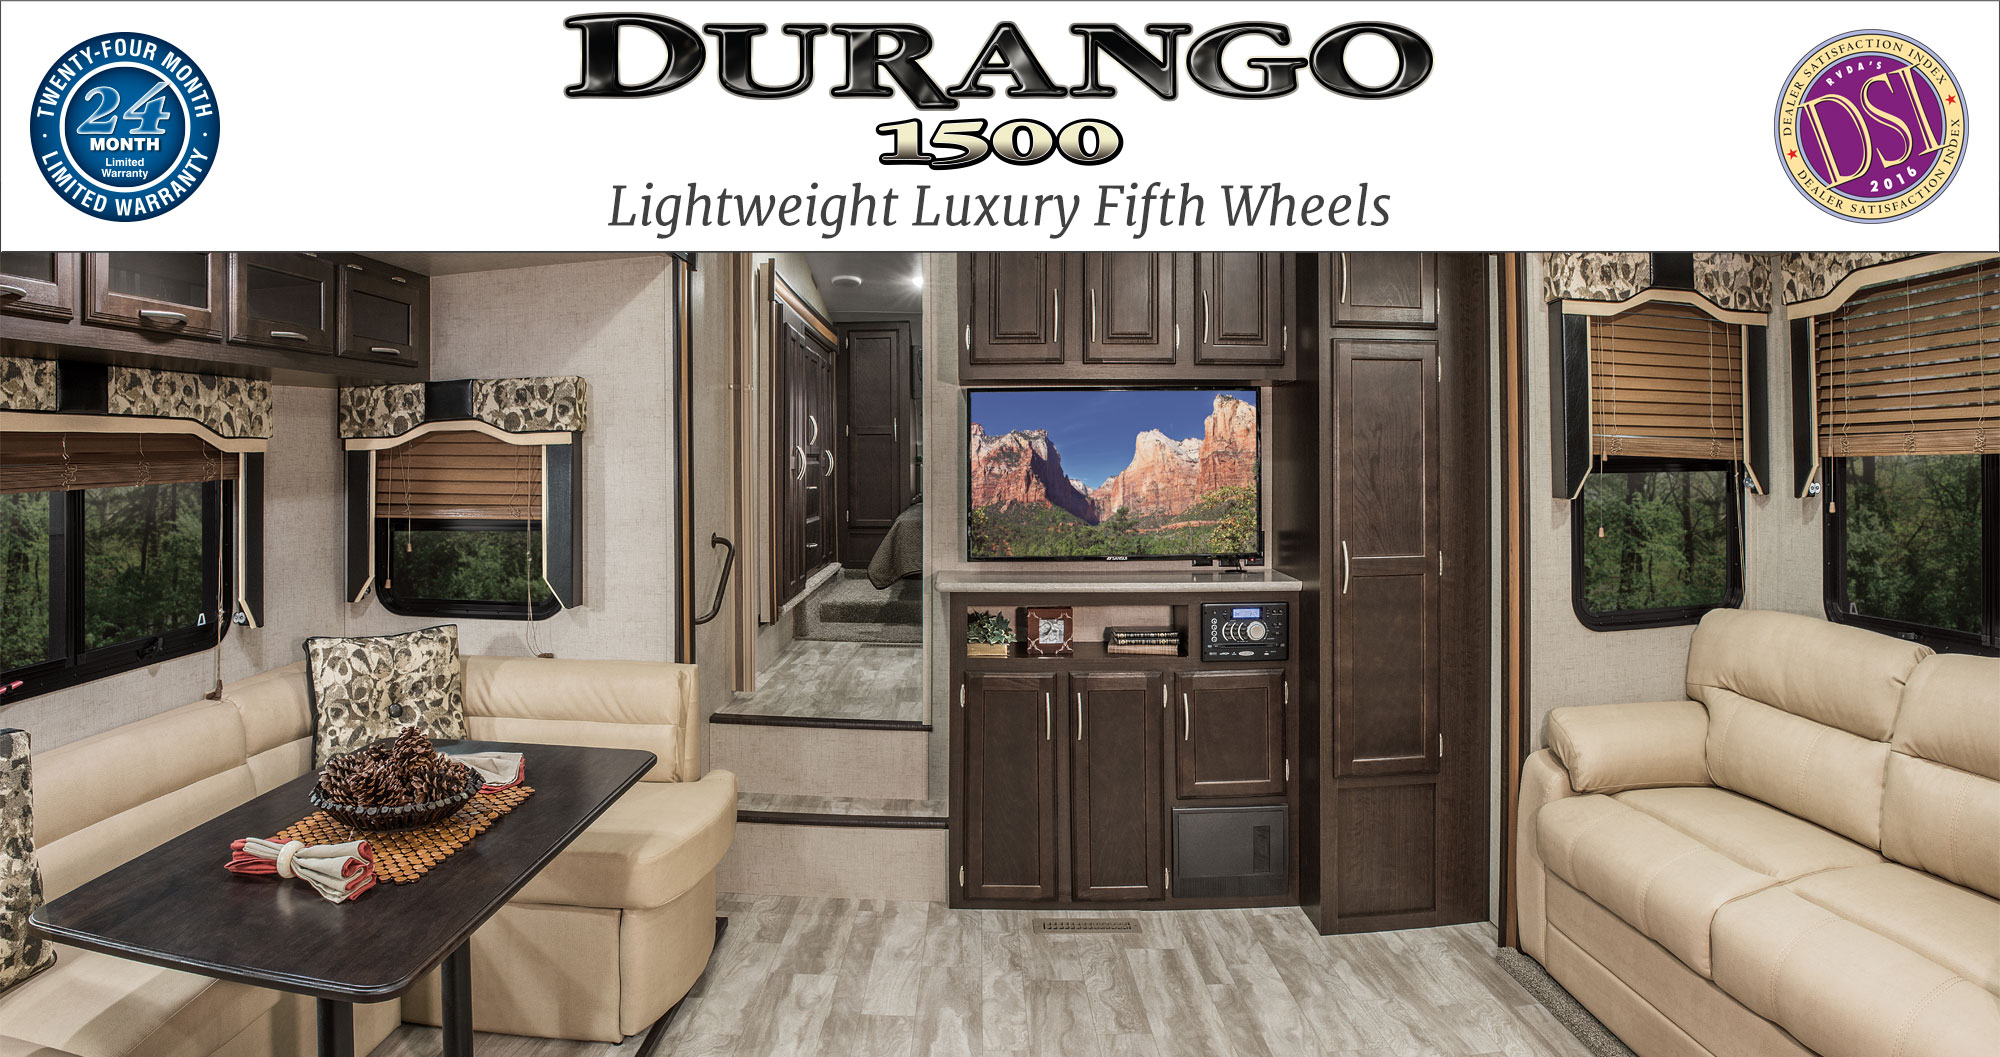 KZ RV Durango 1500 Lightweight Luxury Fifth Wheels